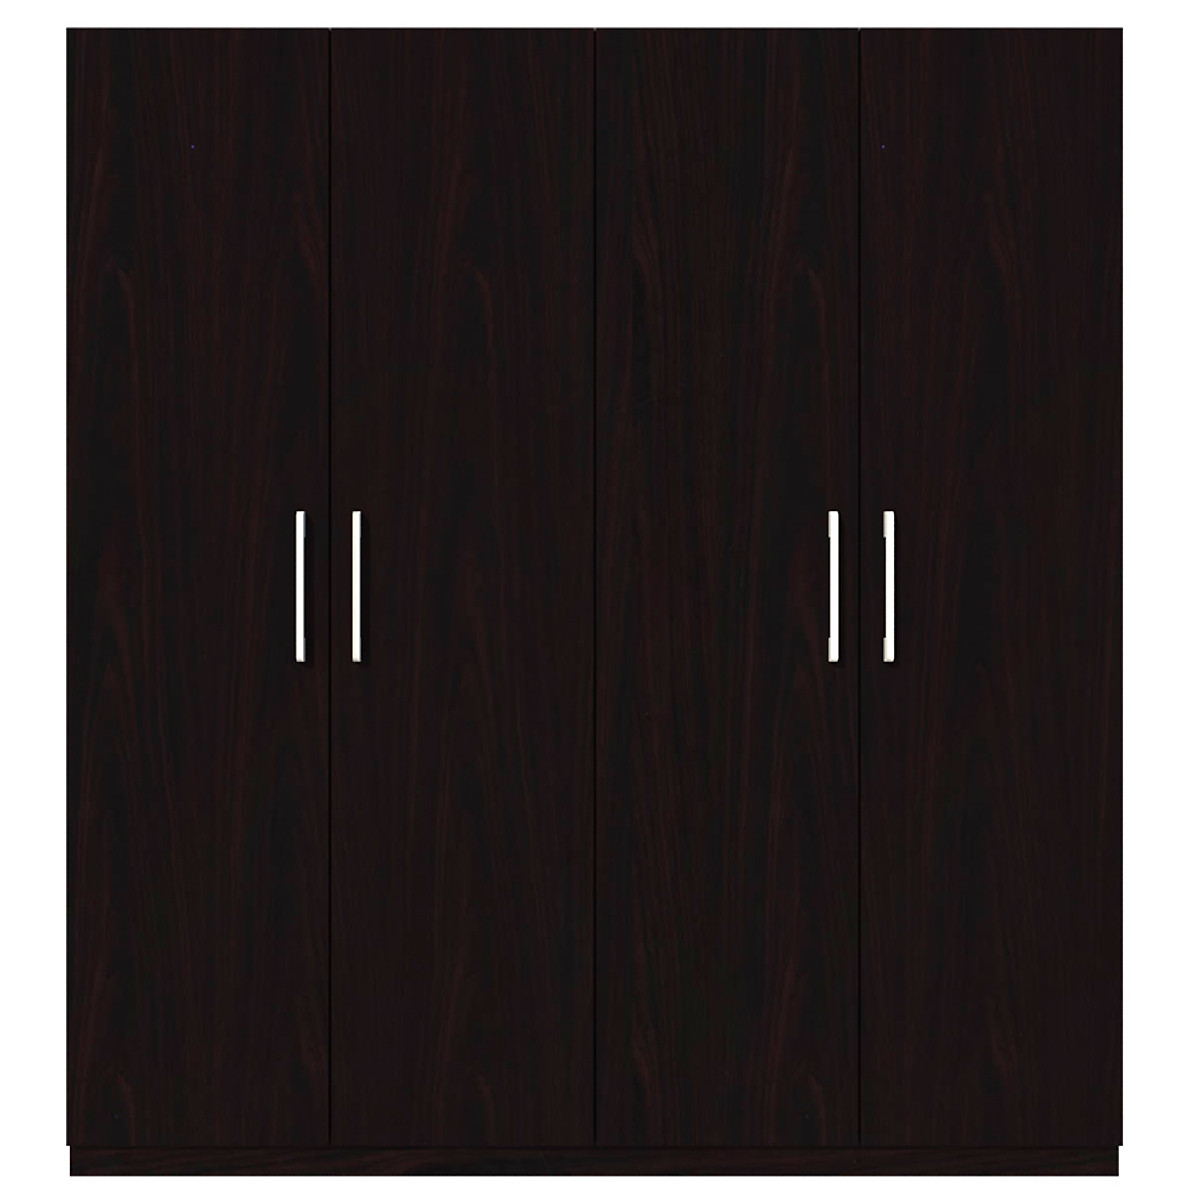 Tủ quần áo gỗ MDF Tundo 4 cánh 3 ngăn đứng màu nâu đậm 180 x 55 x 200cm